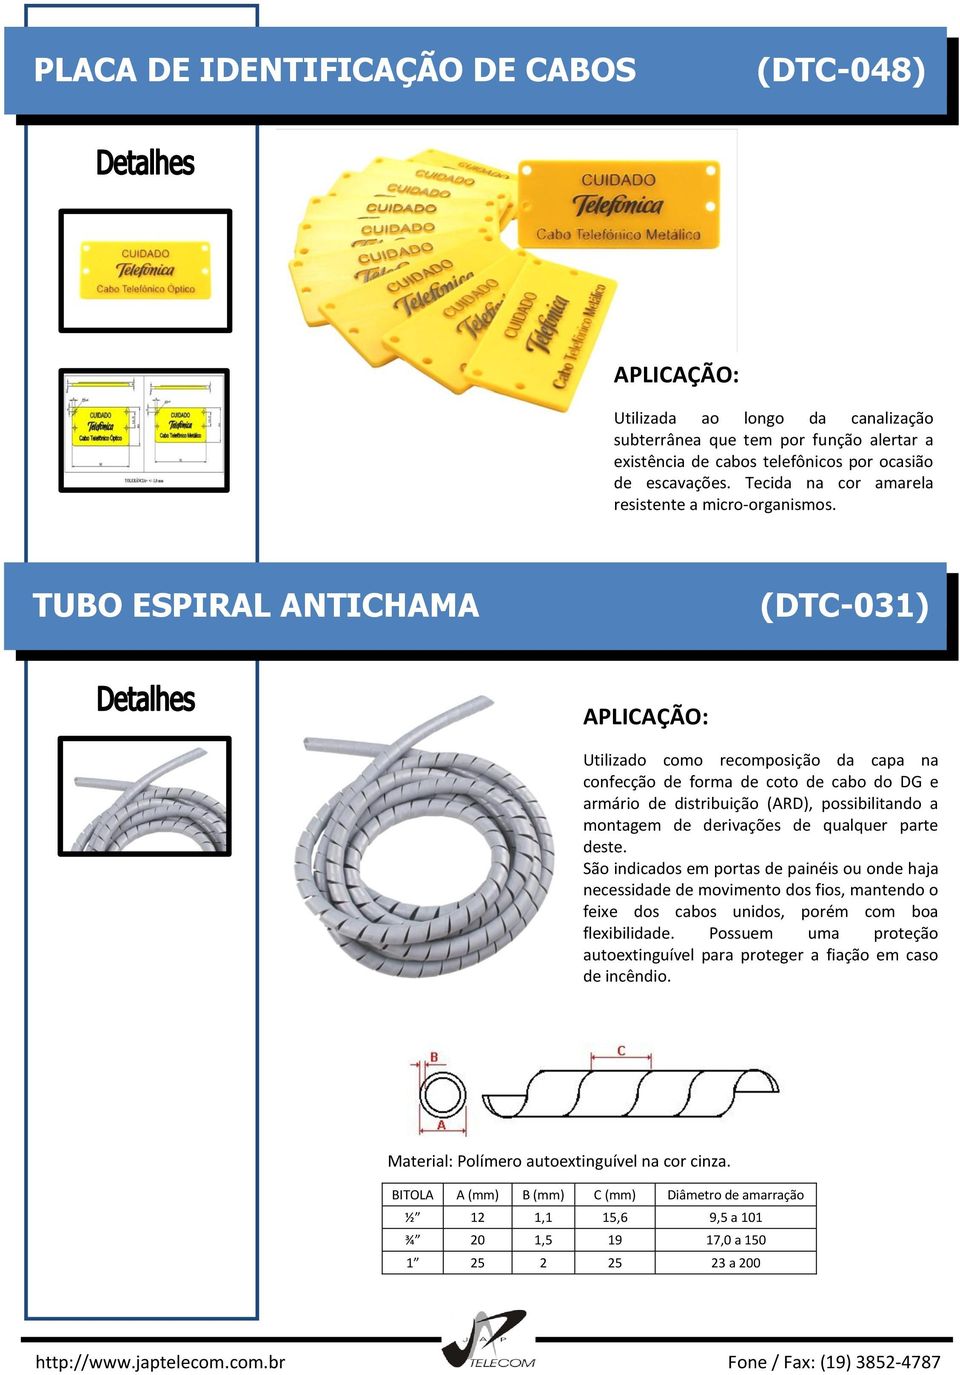 TUBO ESPIRAL ANTICHAMA (DTC-031) Utilizado como recomposição da capa na confecção de forma de coto de cabo do DG e armário de distribuição (ARD), possibilitando a montagem de derivações de qualquer